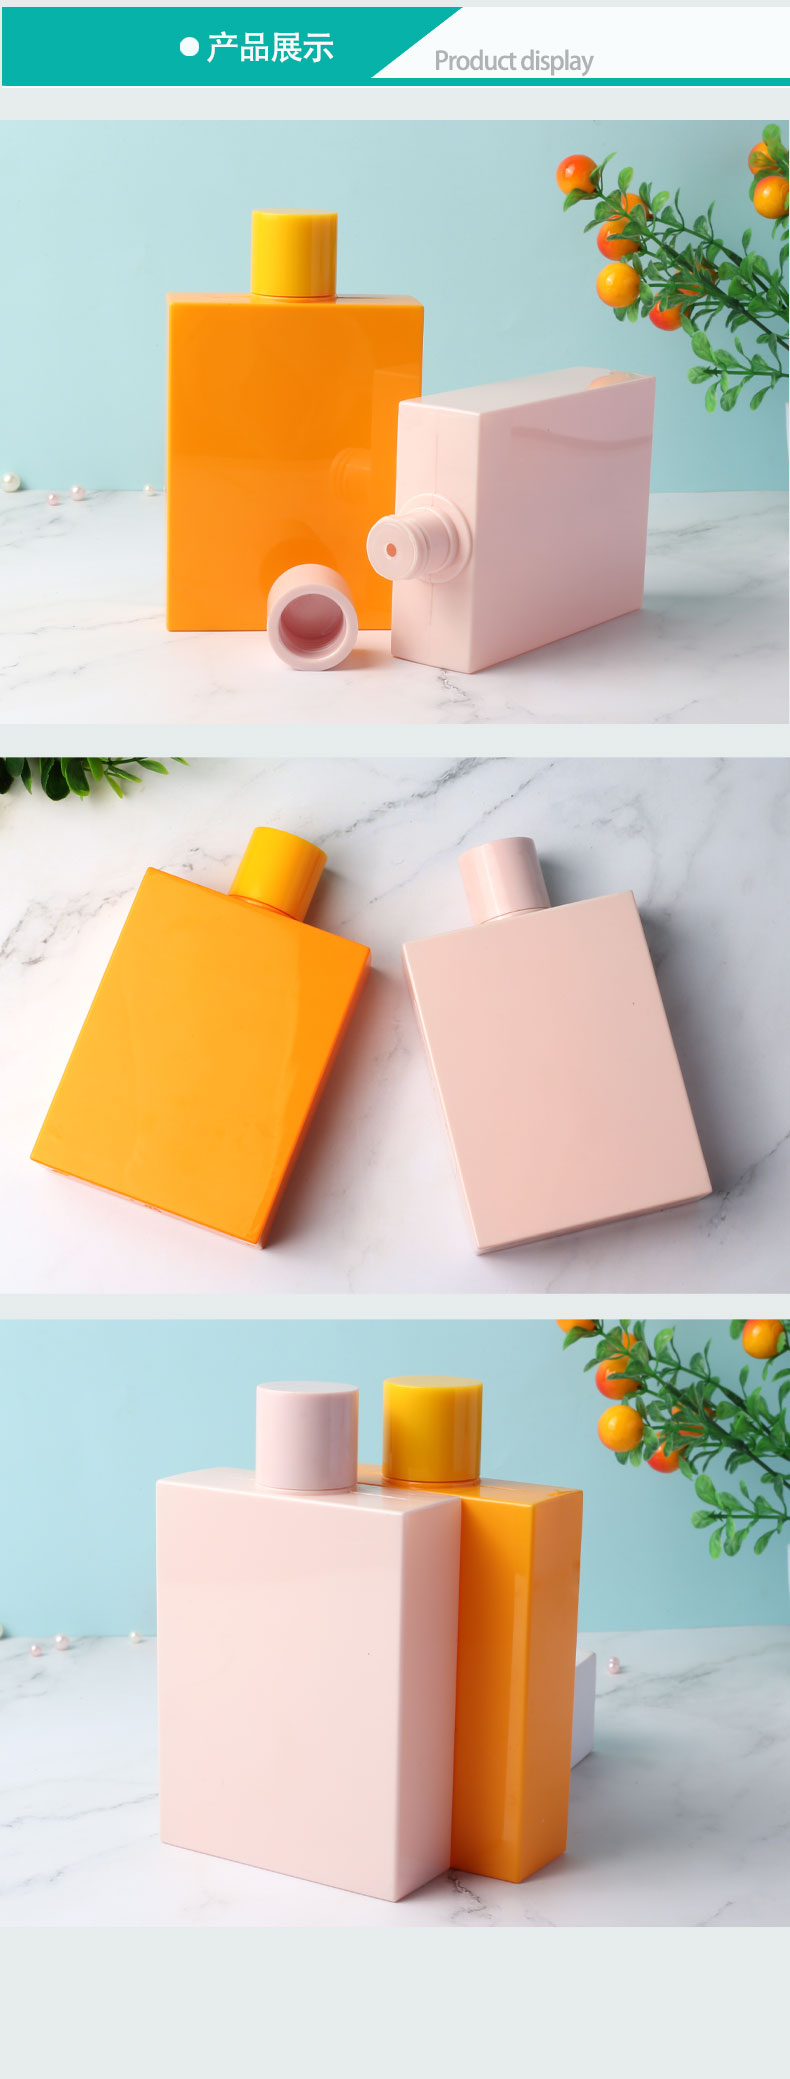 橙色和粉色方形扁瓶_06.jpg